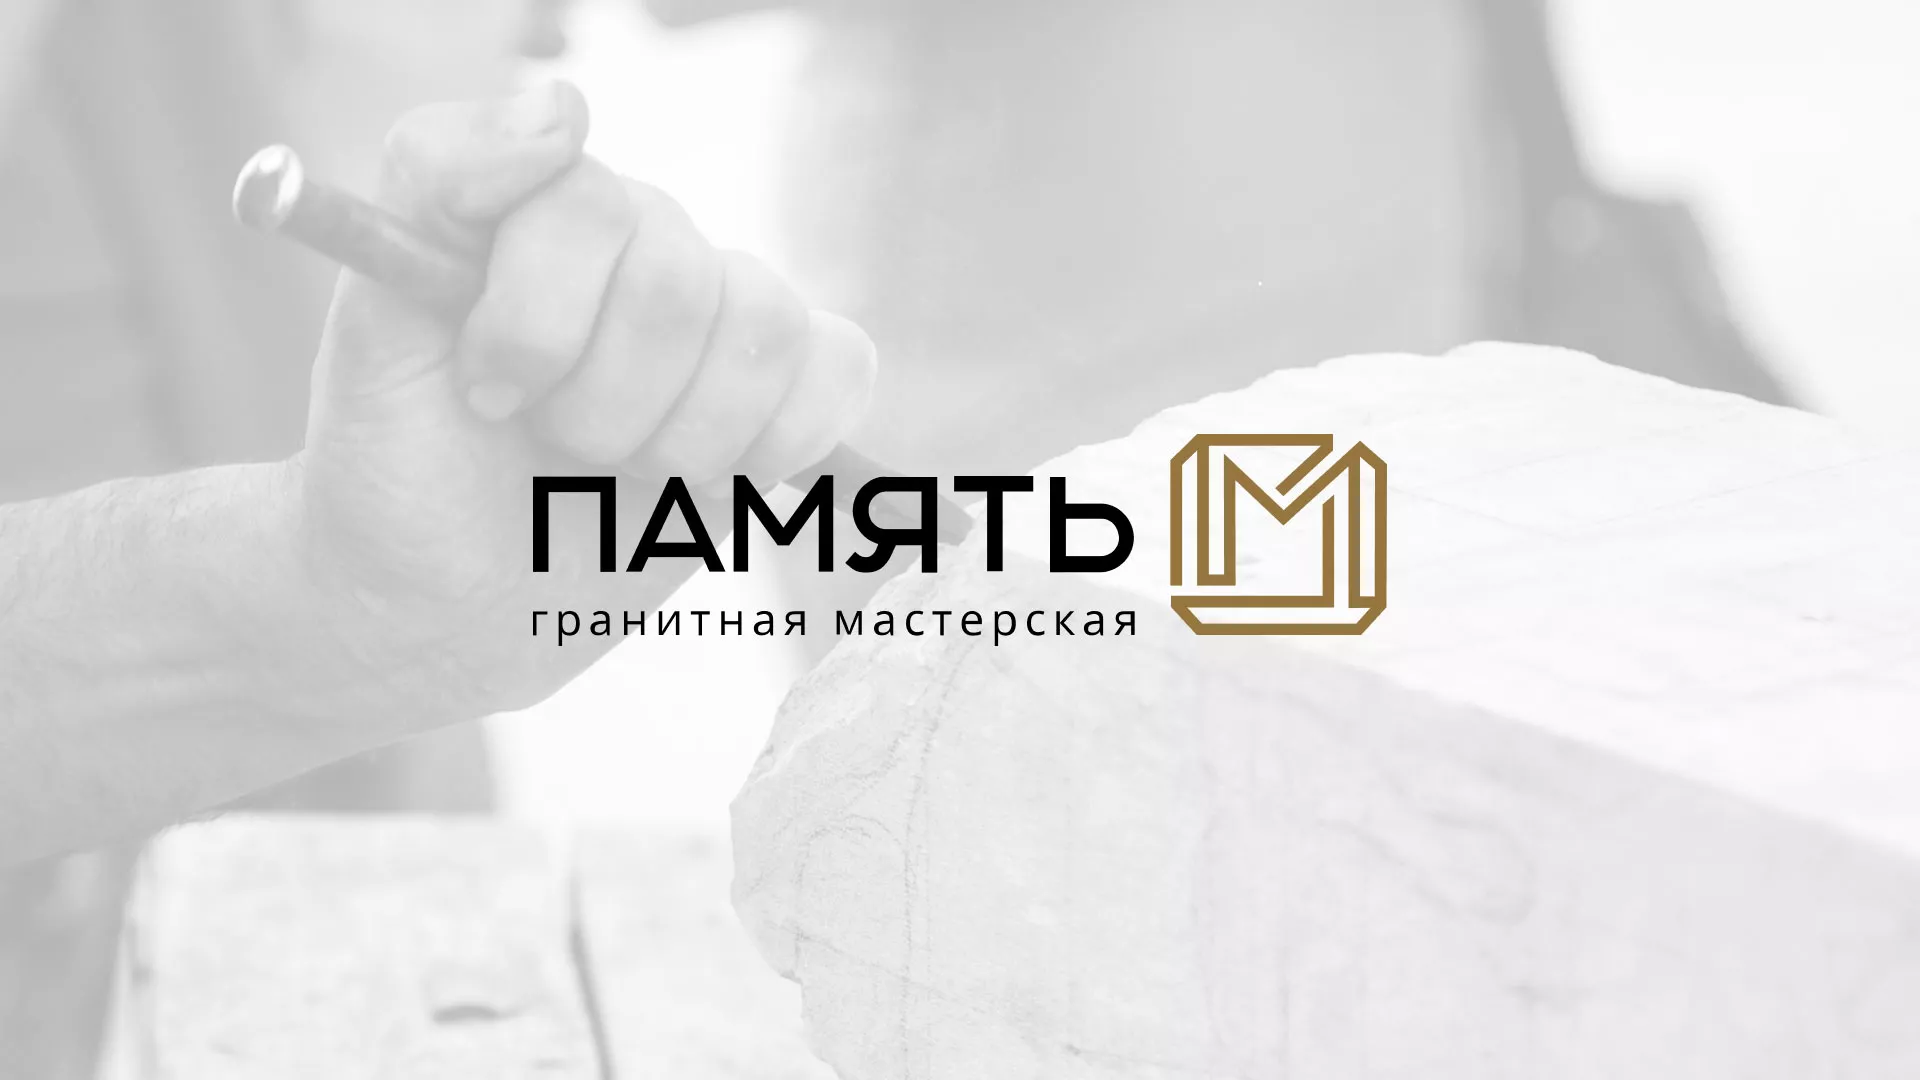 Разработка логотипа и сайта компании «Память-М» в Княгинино